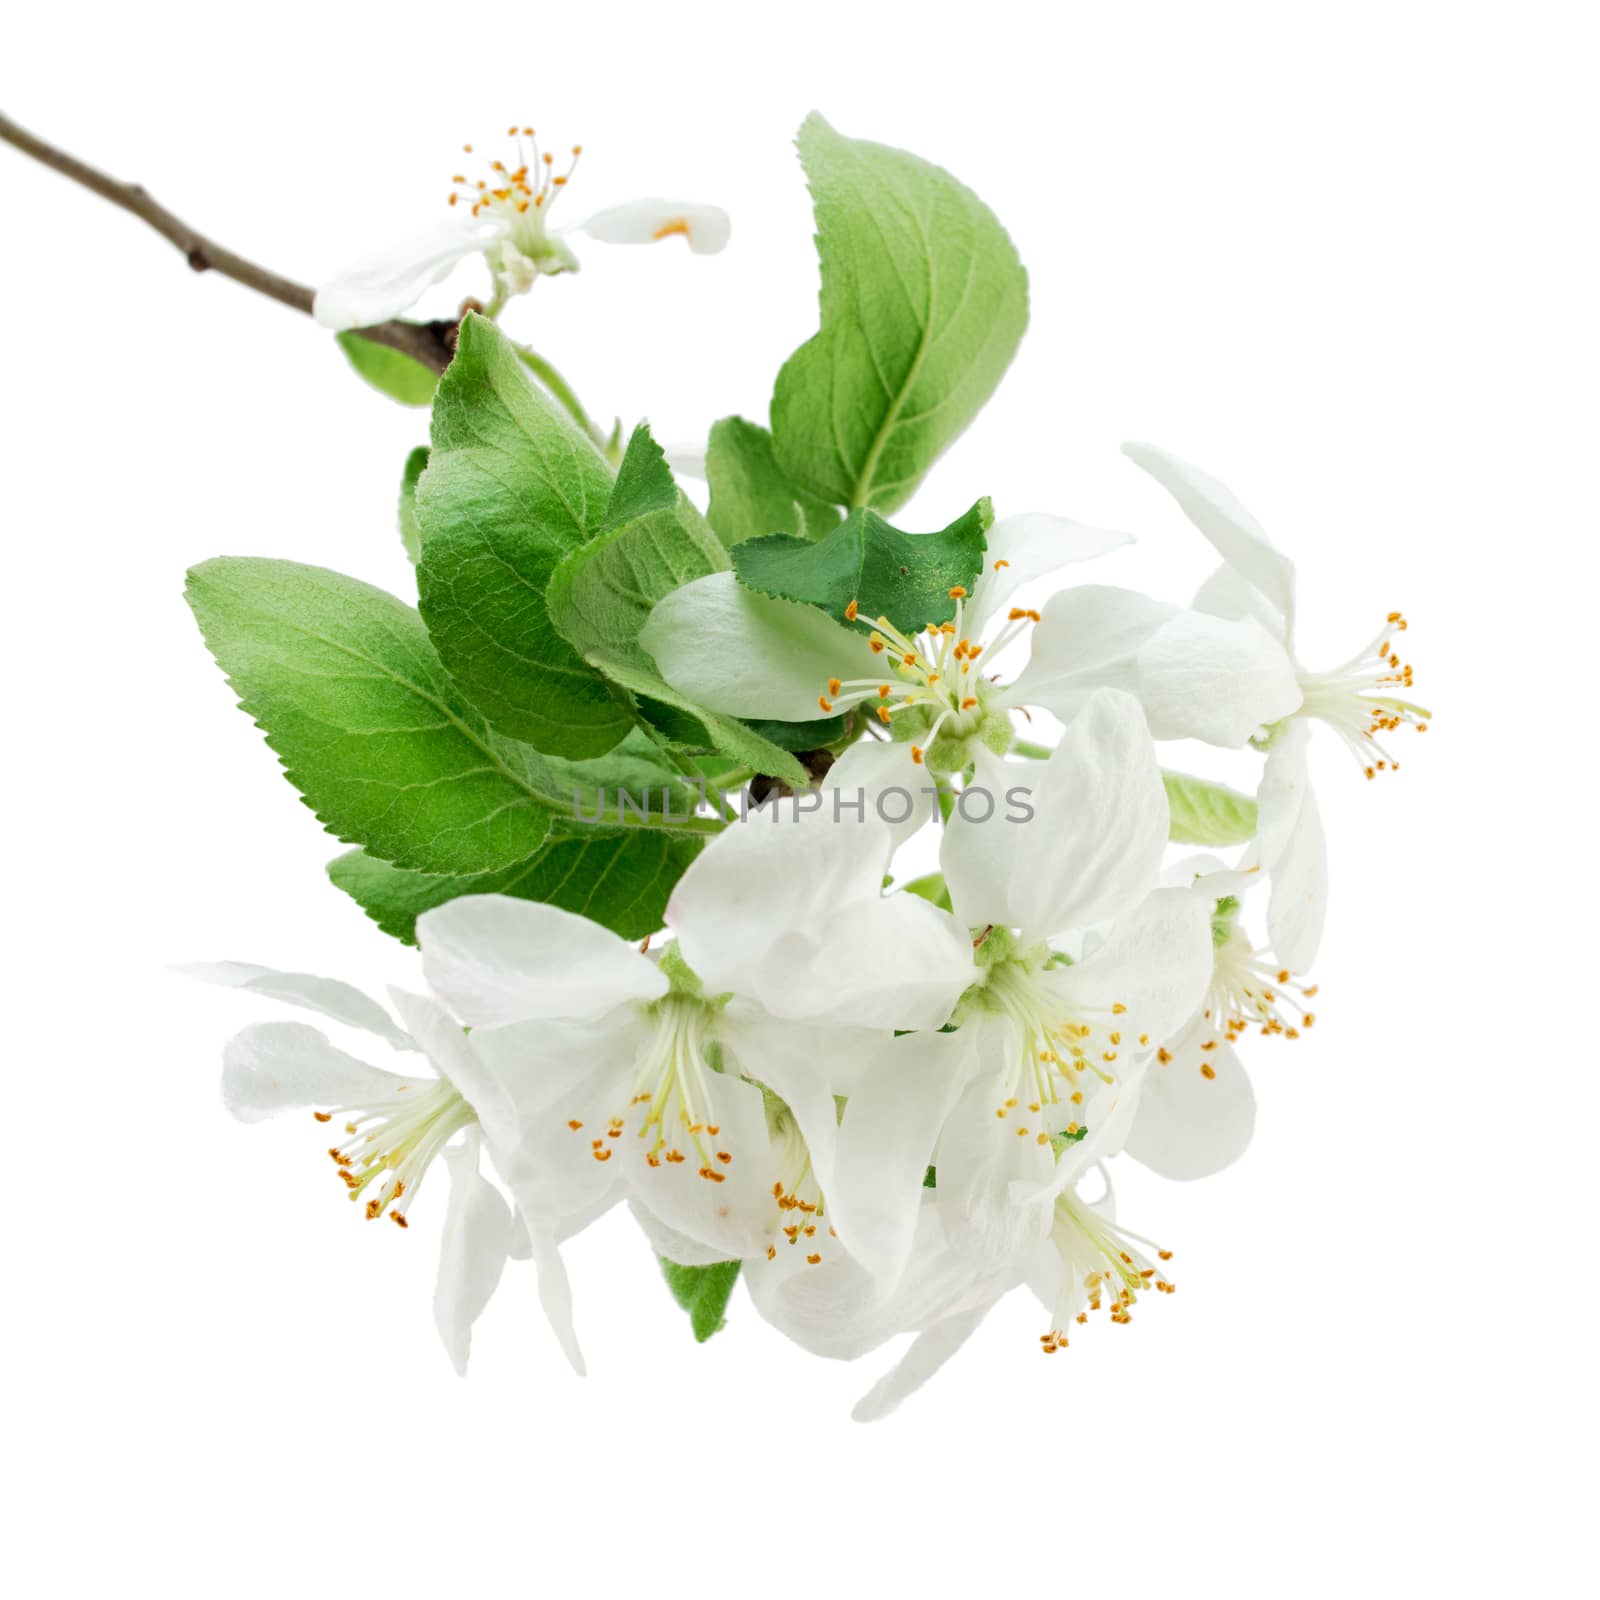 Apple blossoms closeup by hemerocallis